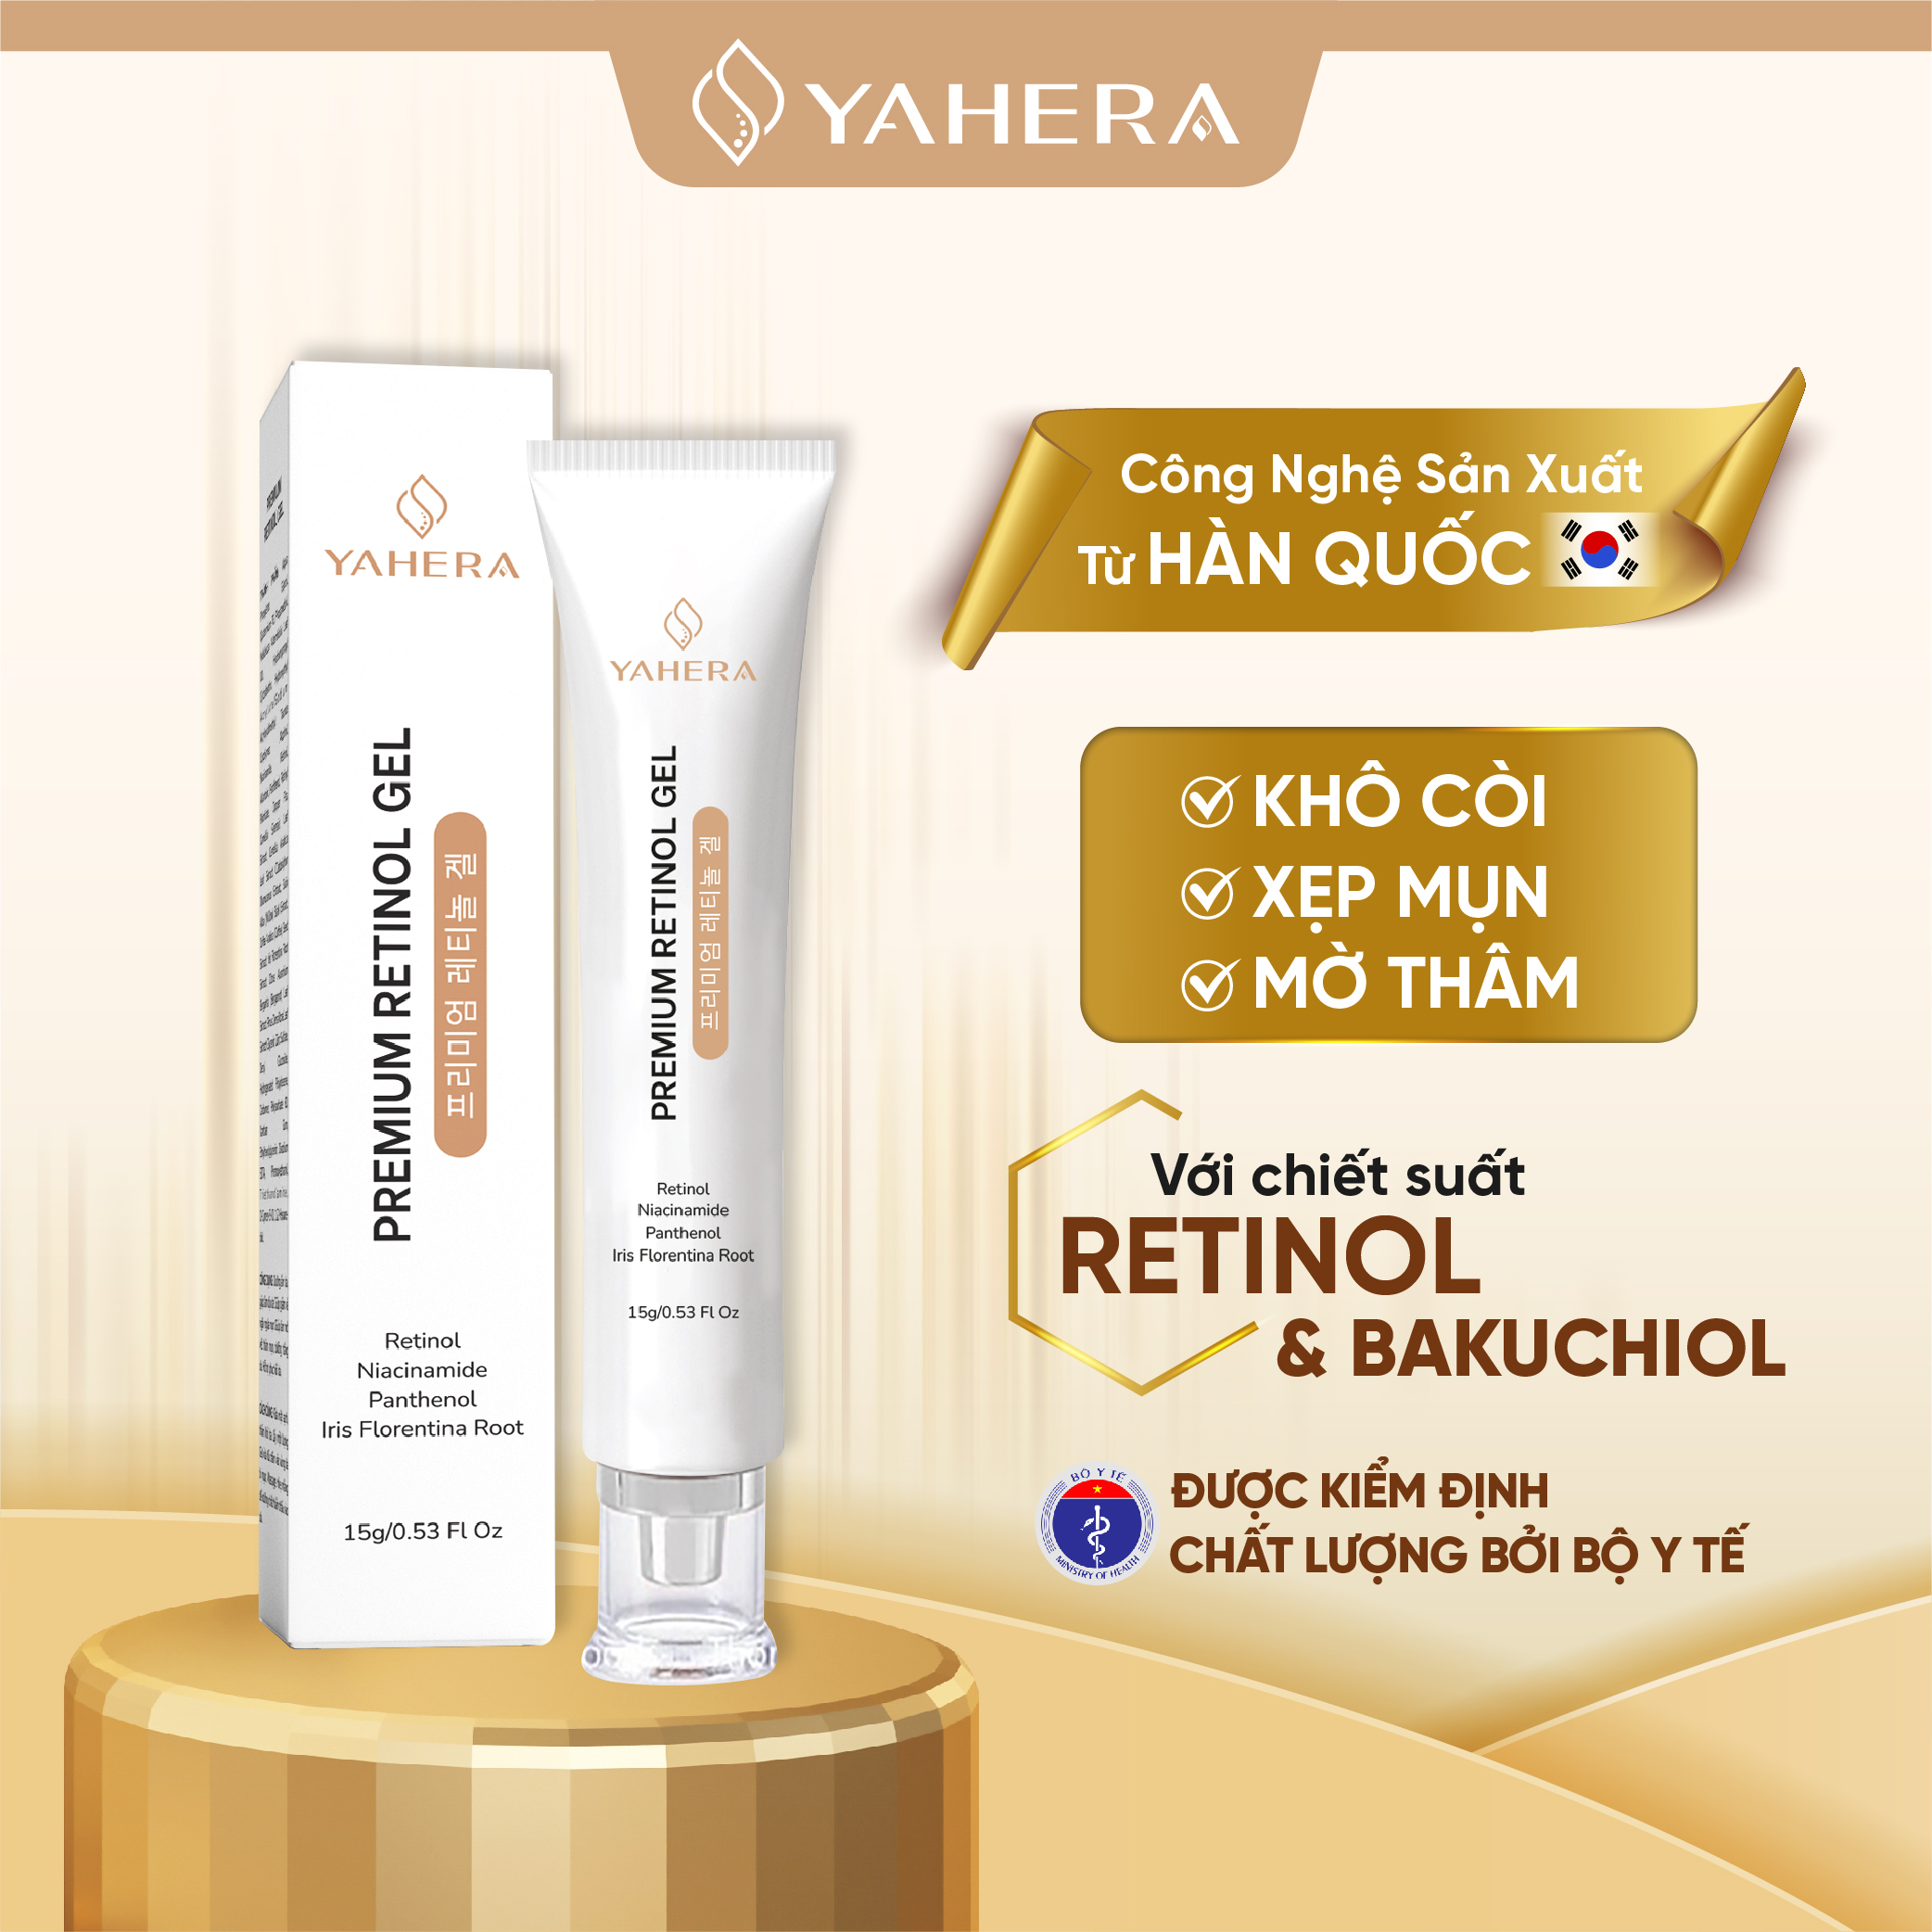 Gel chấm mụn cao cấp YAHERA Premium Retinol Gel giúp giảm sưng viêm khô cồi xệp mụn 15G